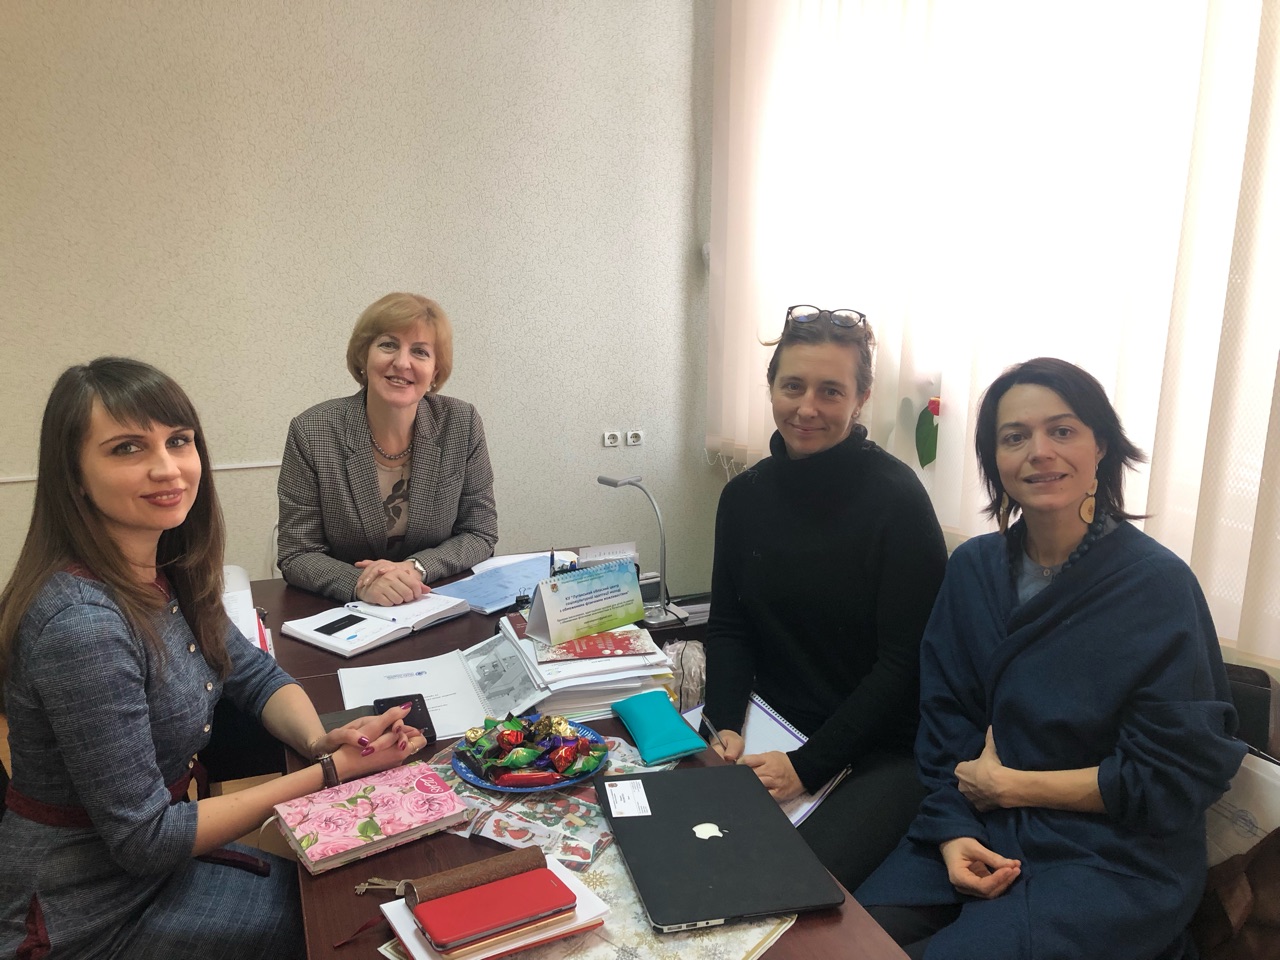 Evaluation of UNFPA psychosocial support to survivors of gender-based violence in Eastern Ukraine